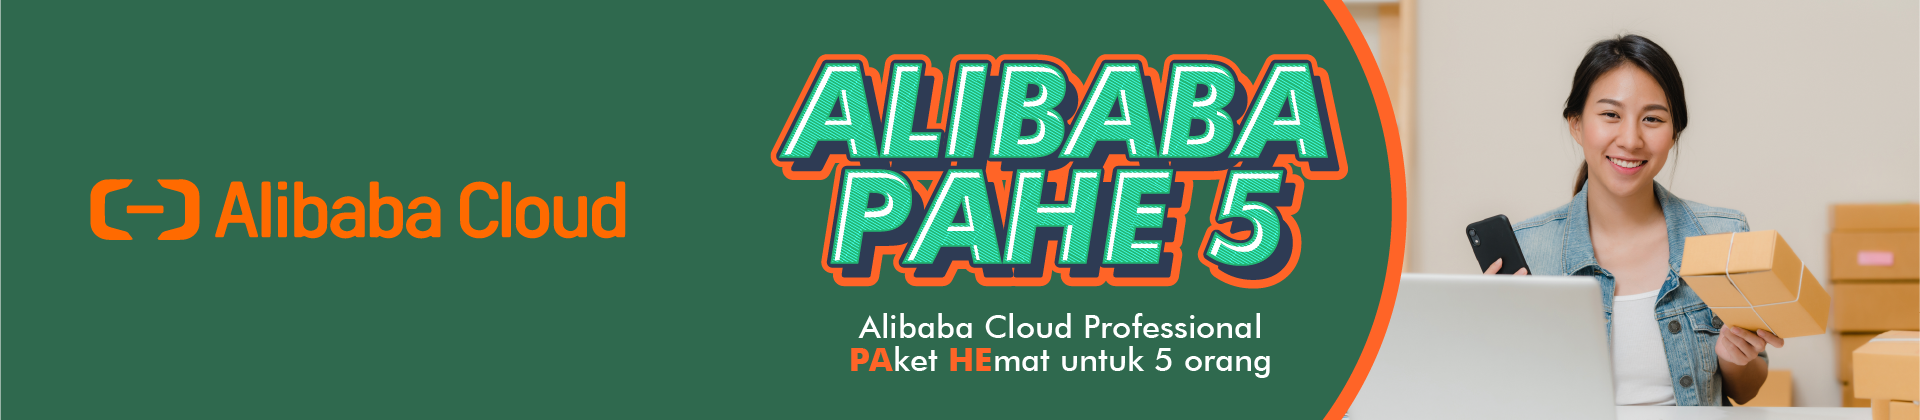 20220112 Alibaba PAHE5_highlight 1920x420